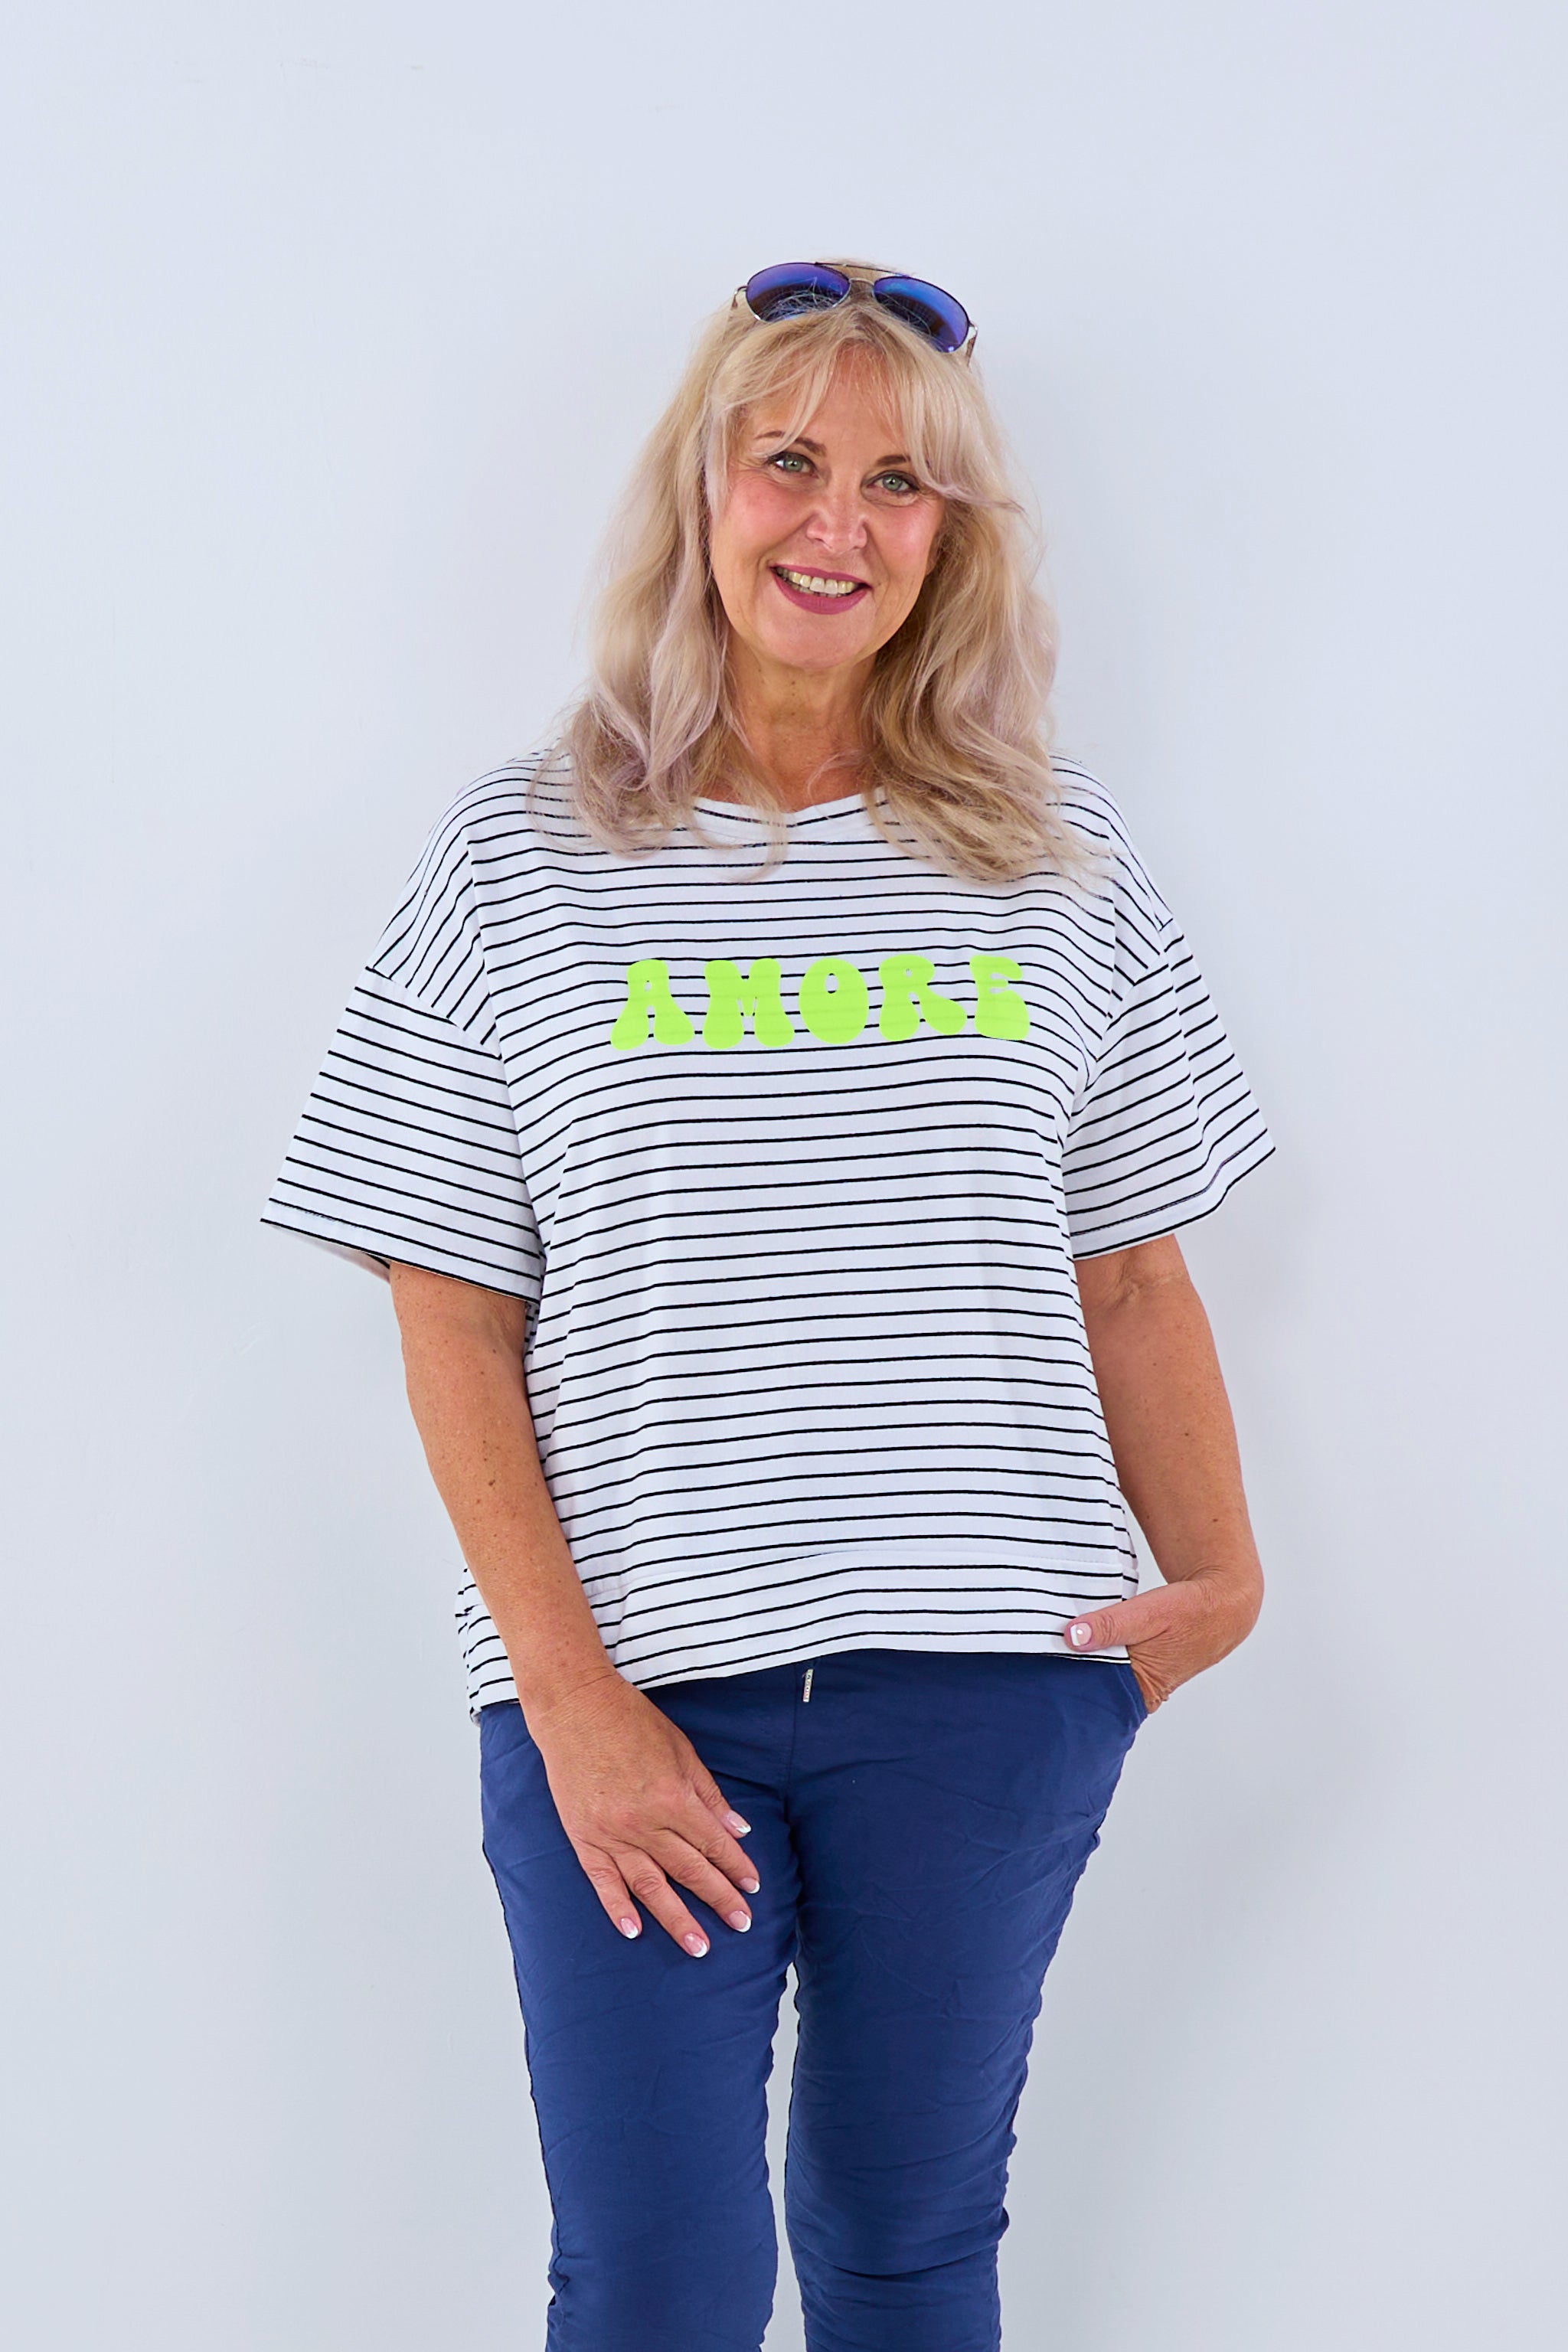 Ringel-Shirt mit Amore-Schriftzug, schwarz-weiß-gelb von Trends & Lifestyle